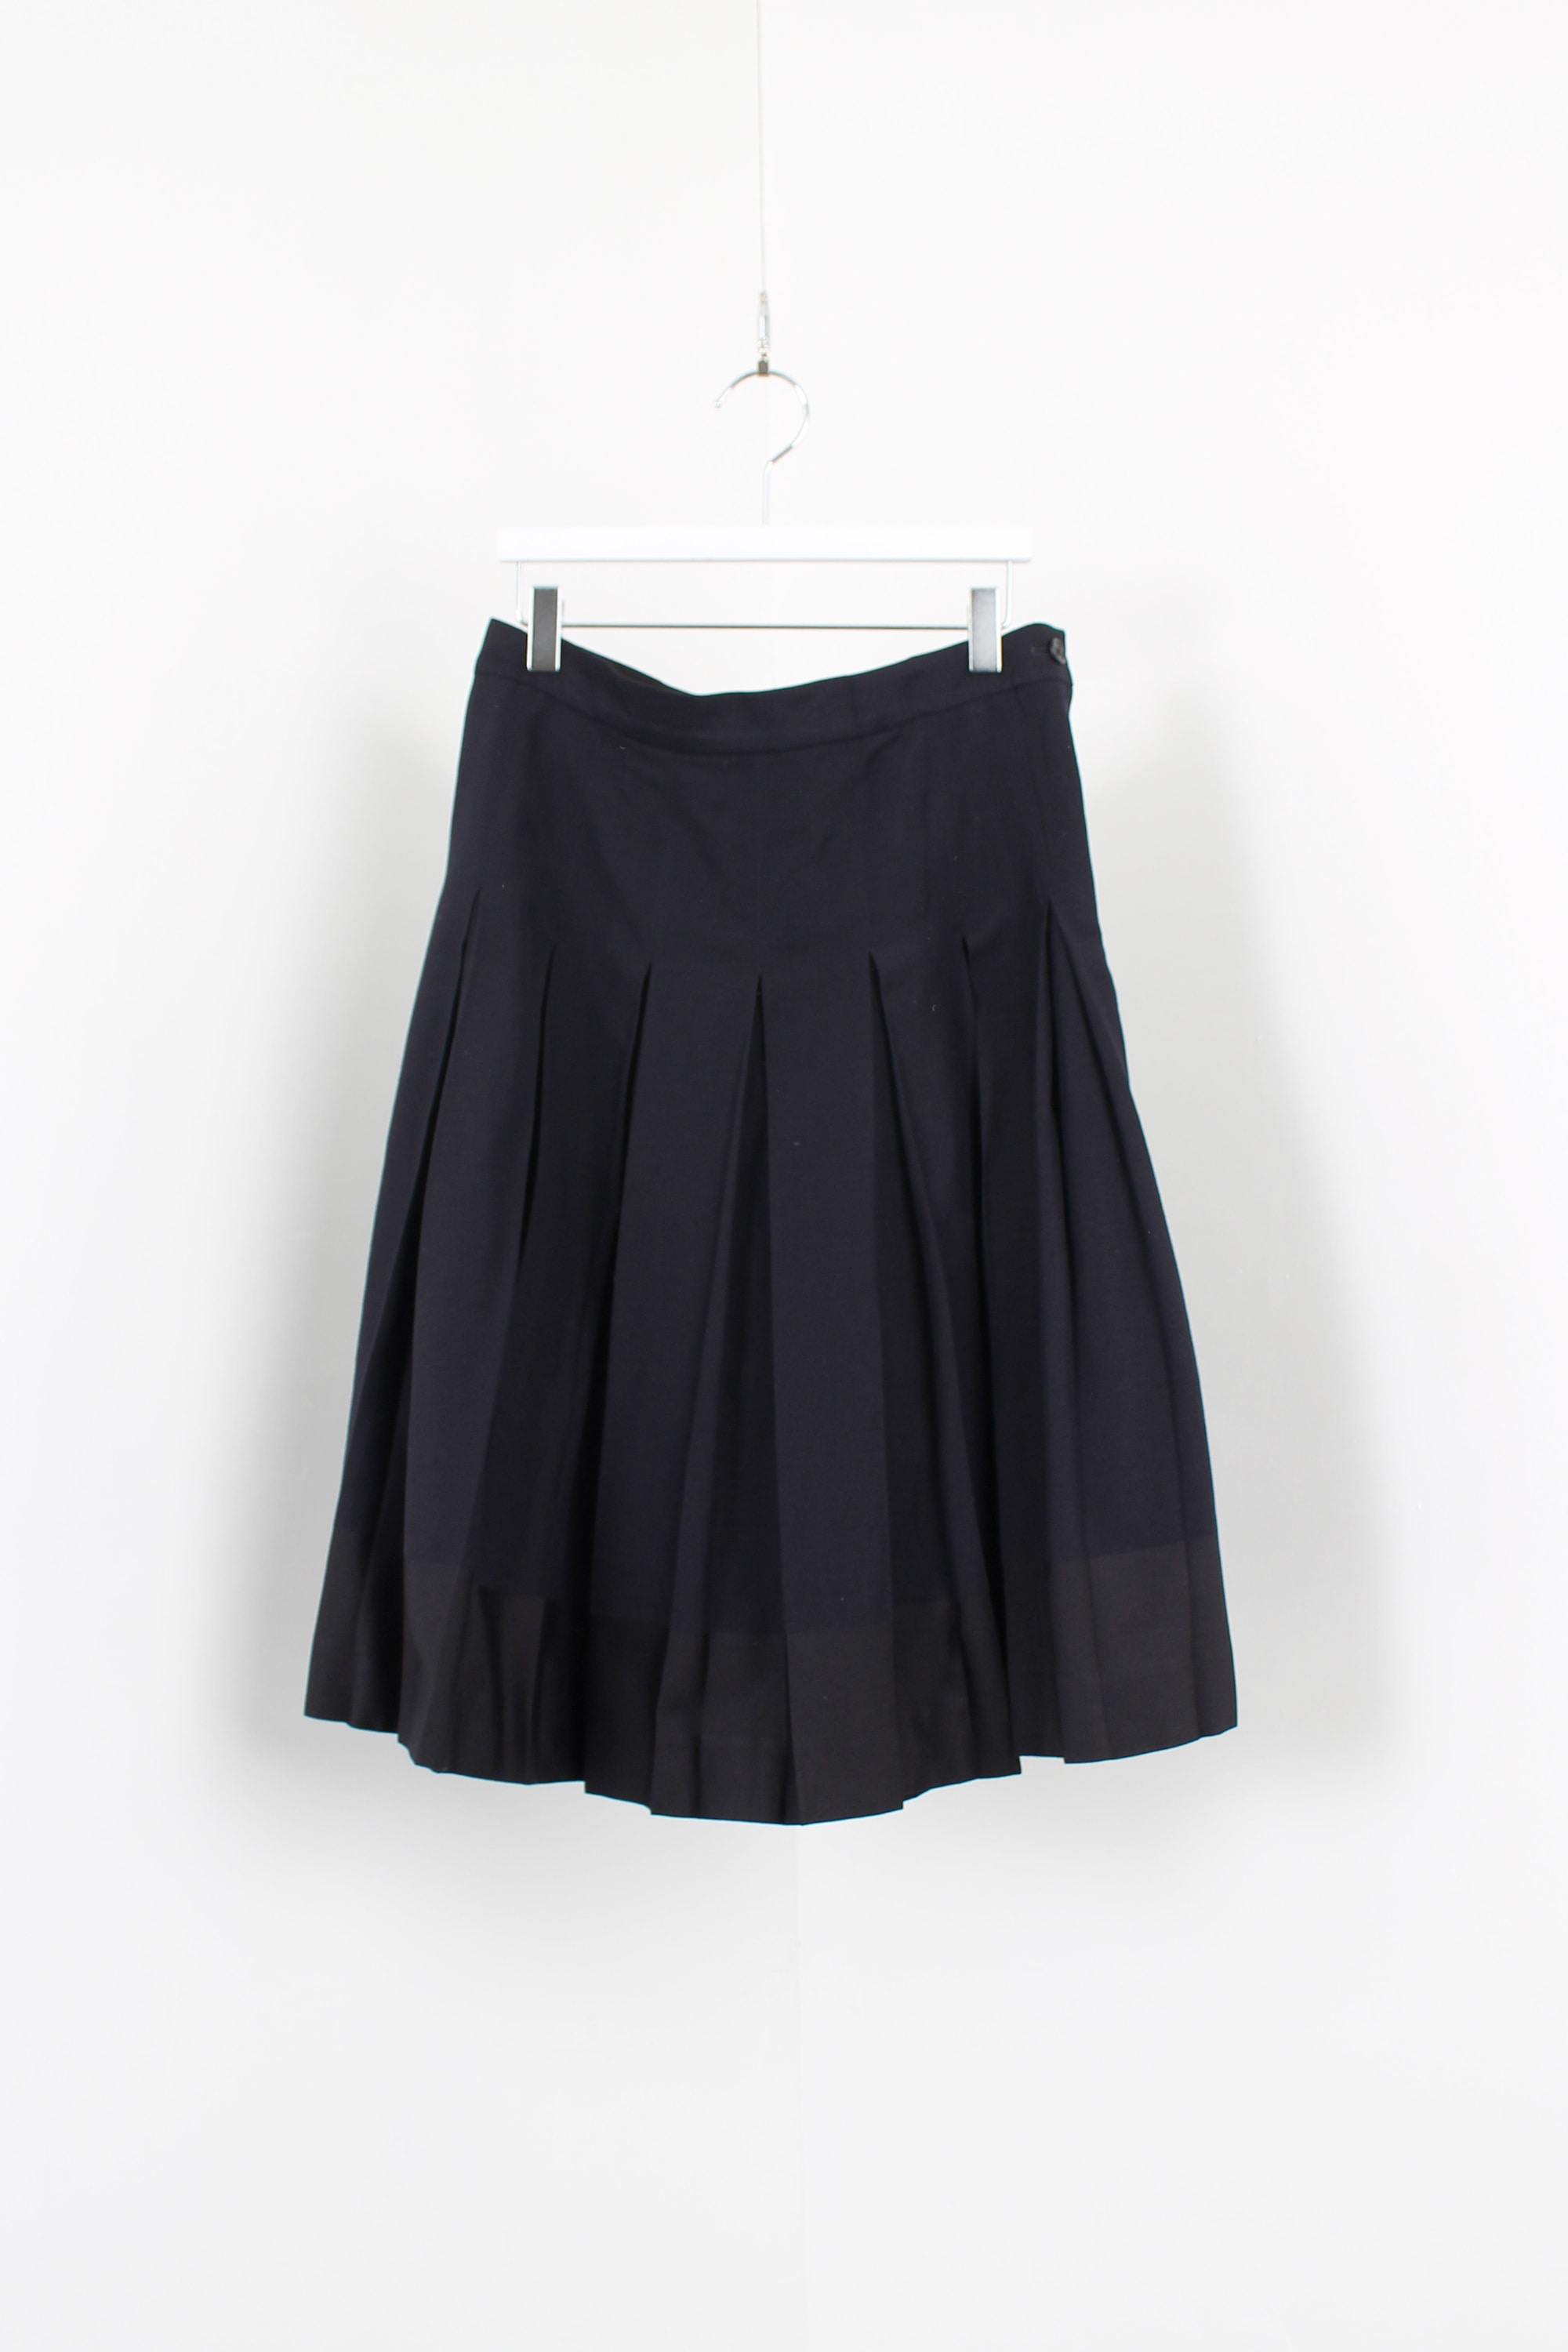 MARGARET HOWELL pleats skirt